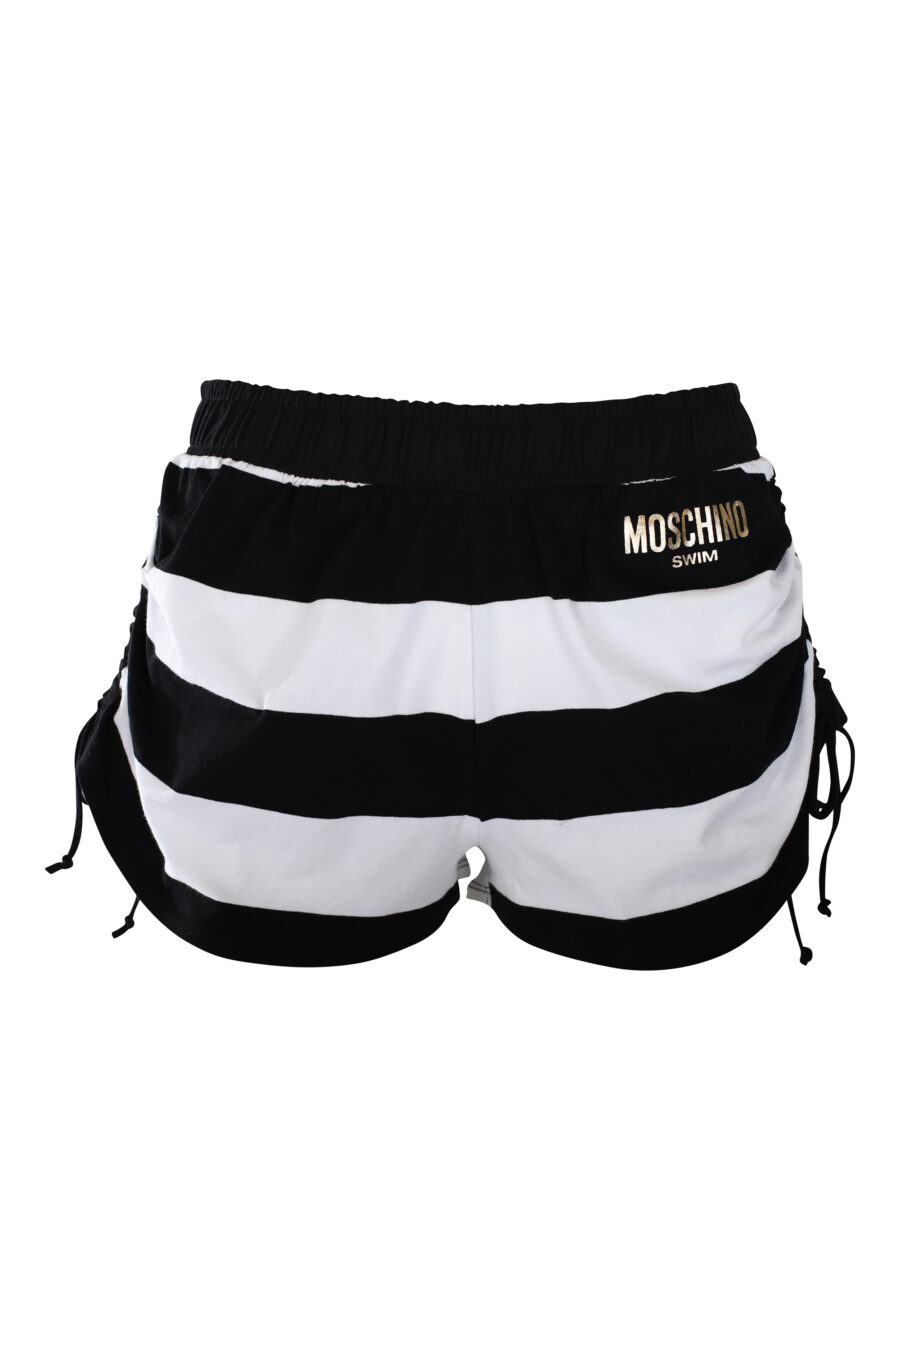 Zweifarbig schwarz-weiß gestreifte Shorts mit goldenem Mini-Logo - IMG 2247